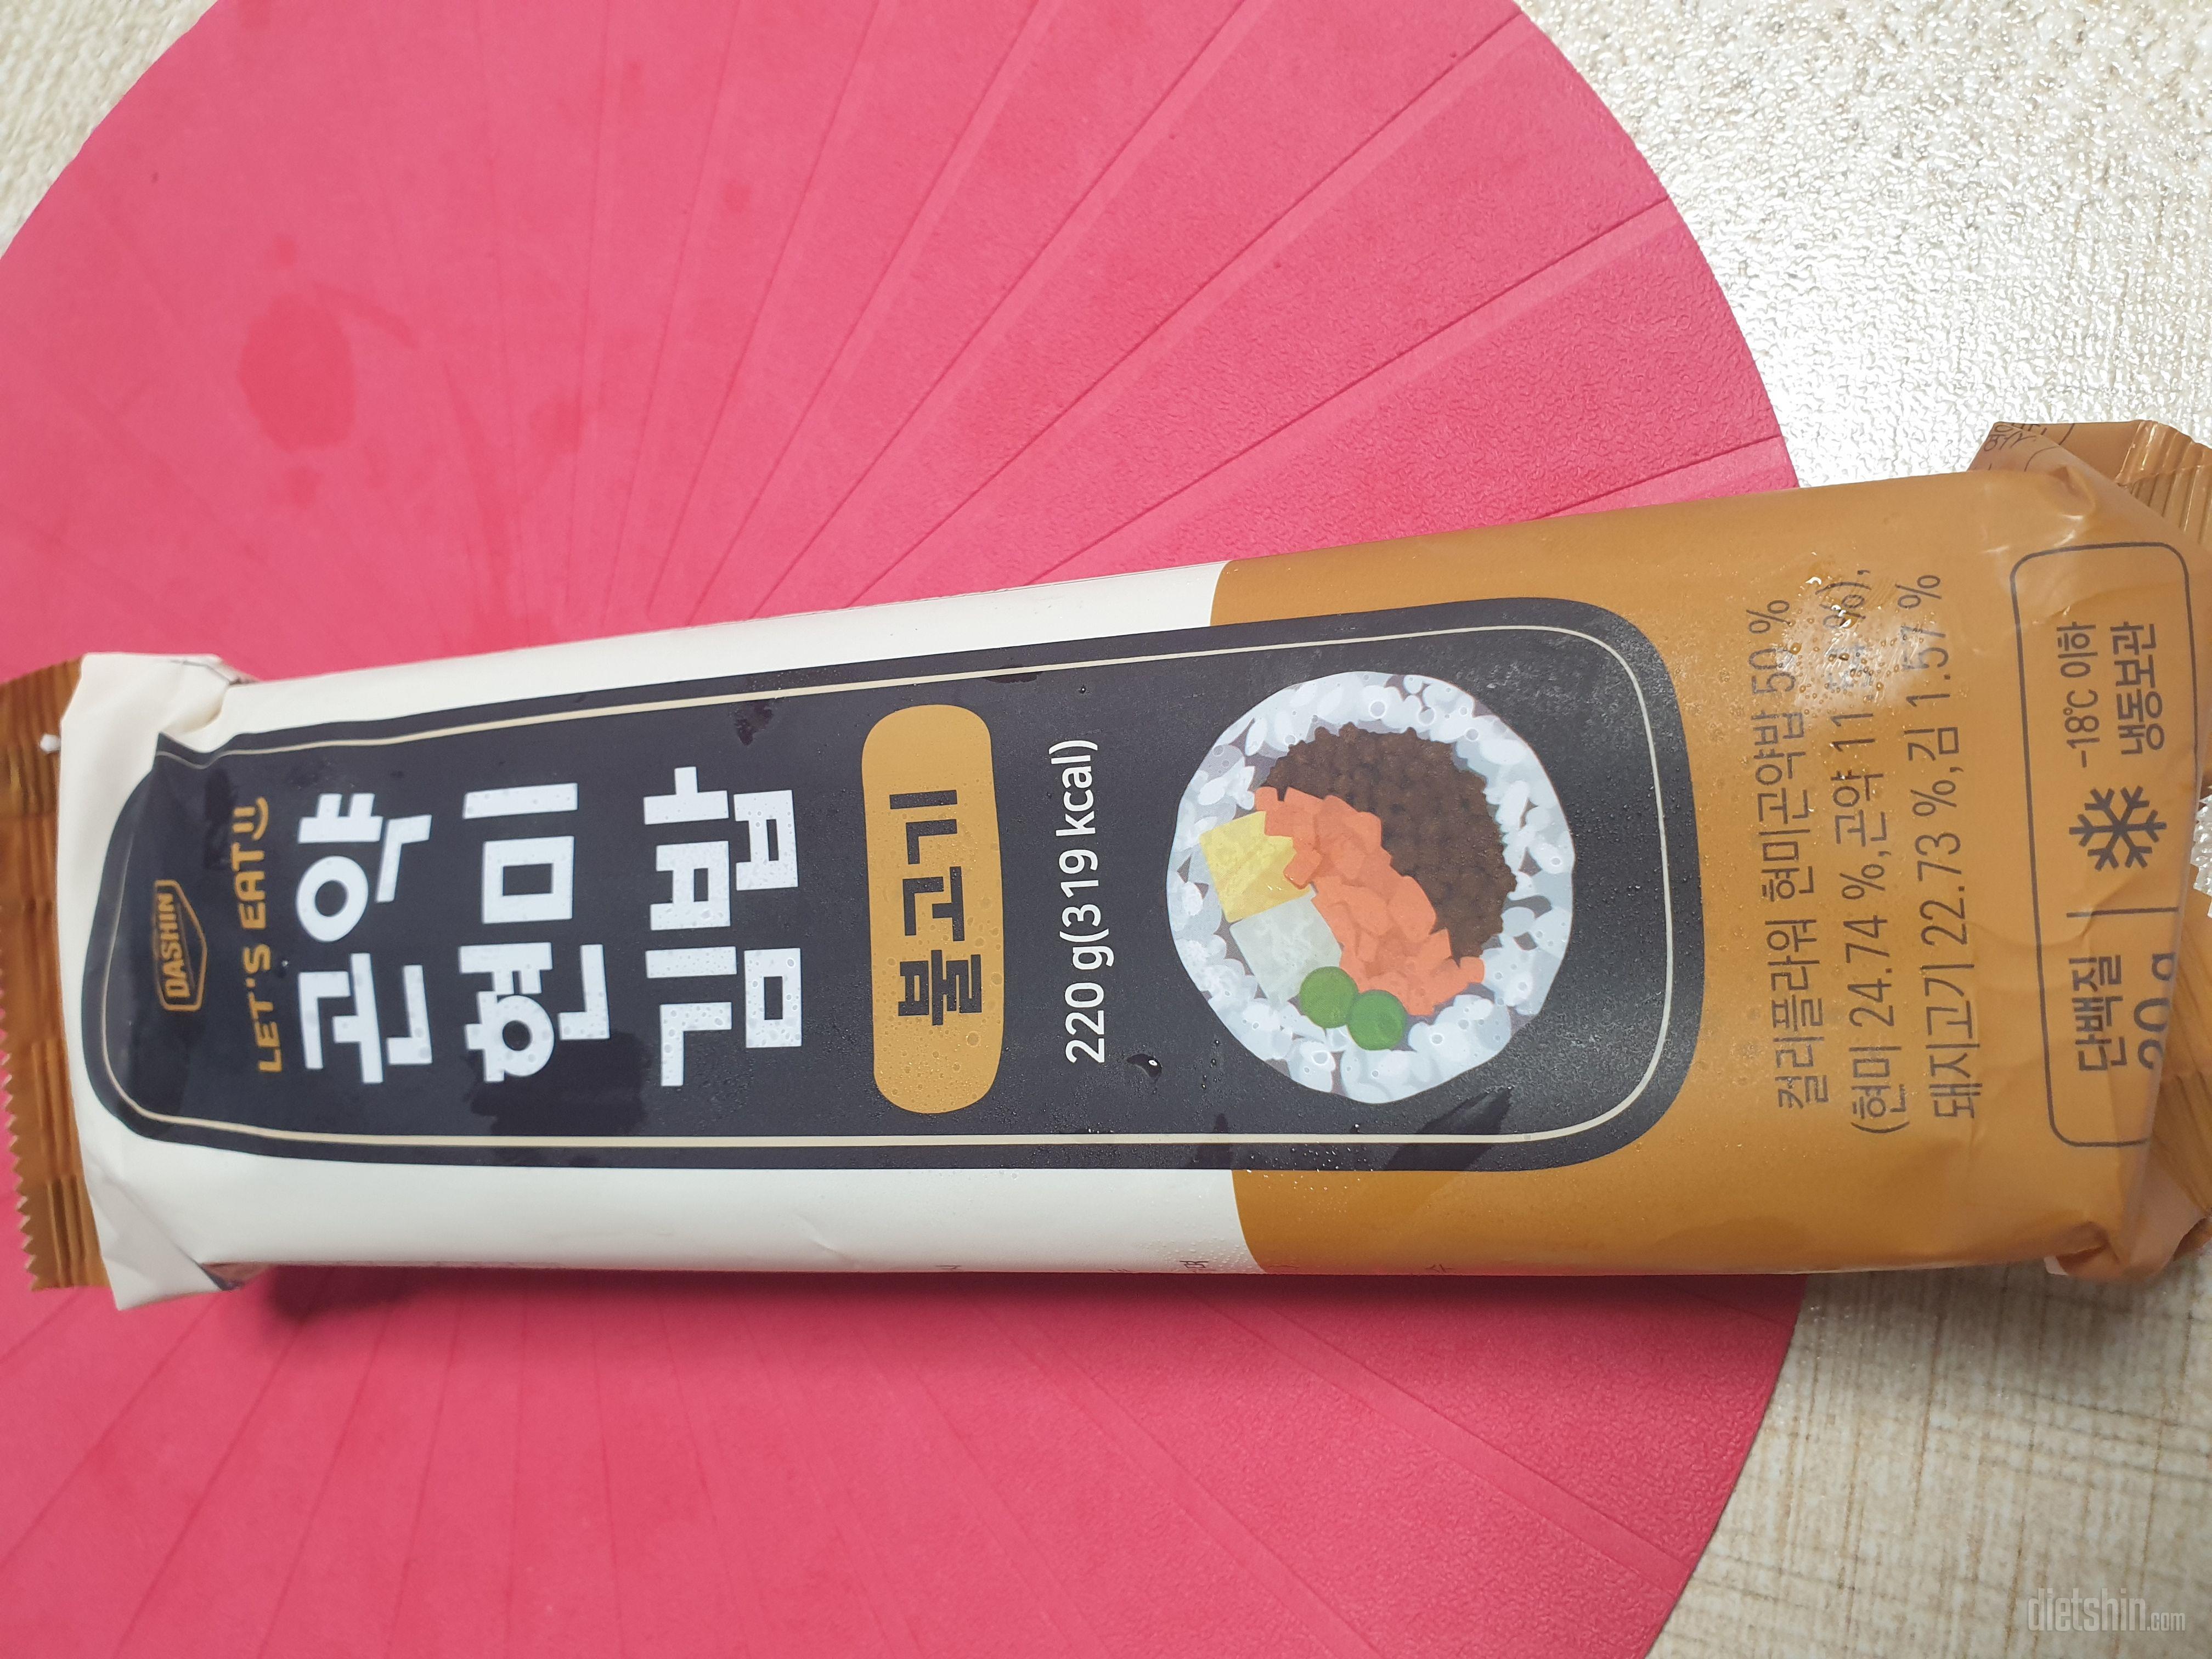 김밥김밥 너무 좋아요
어쩜 다신샵은